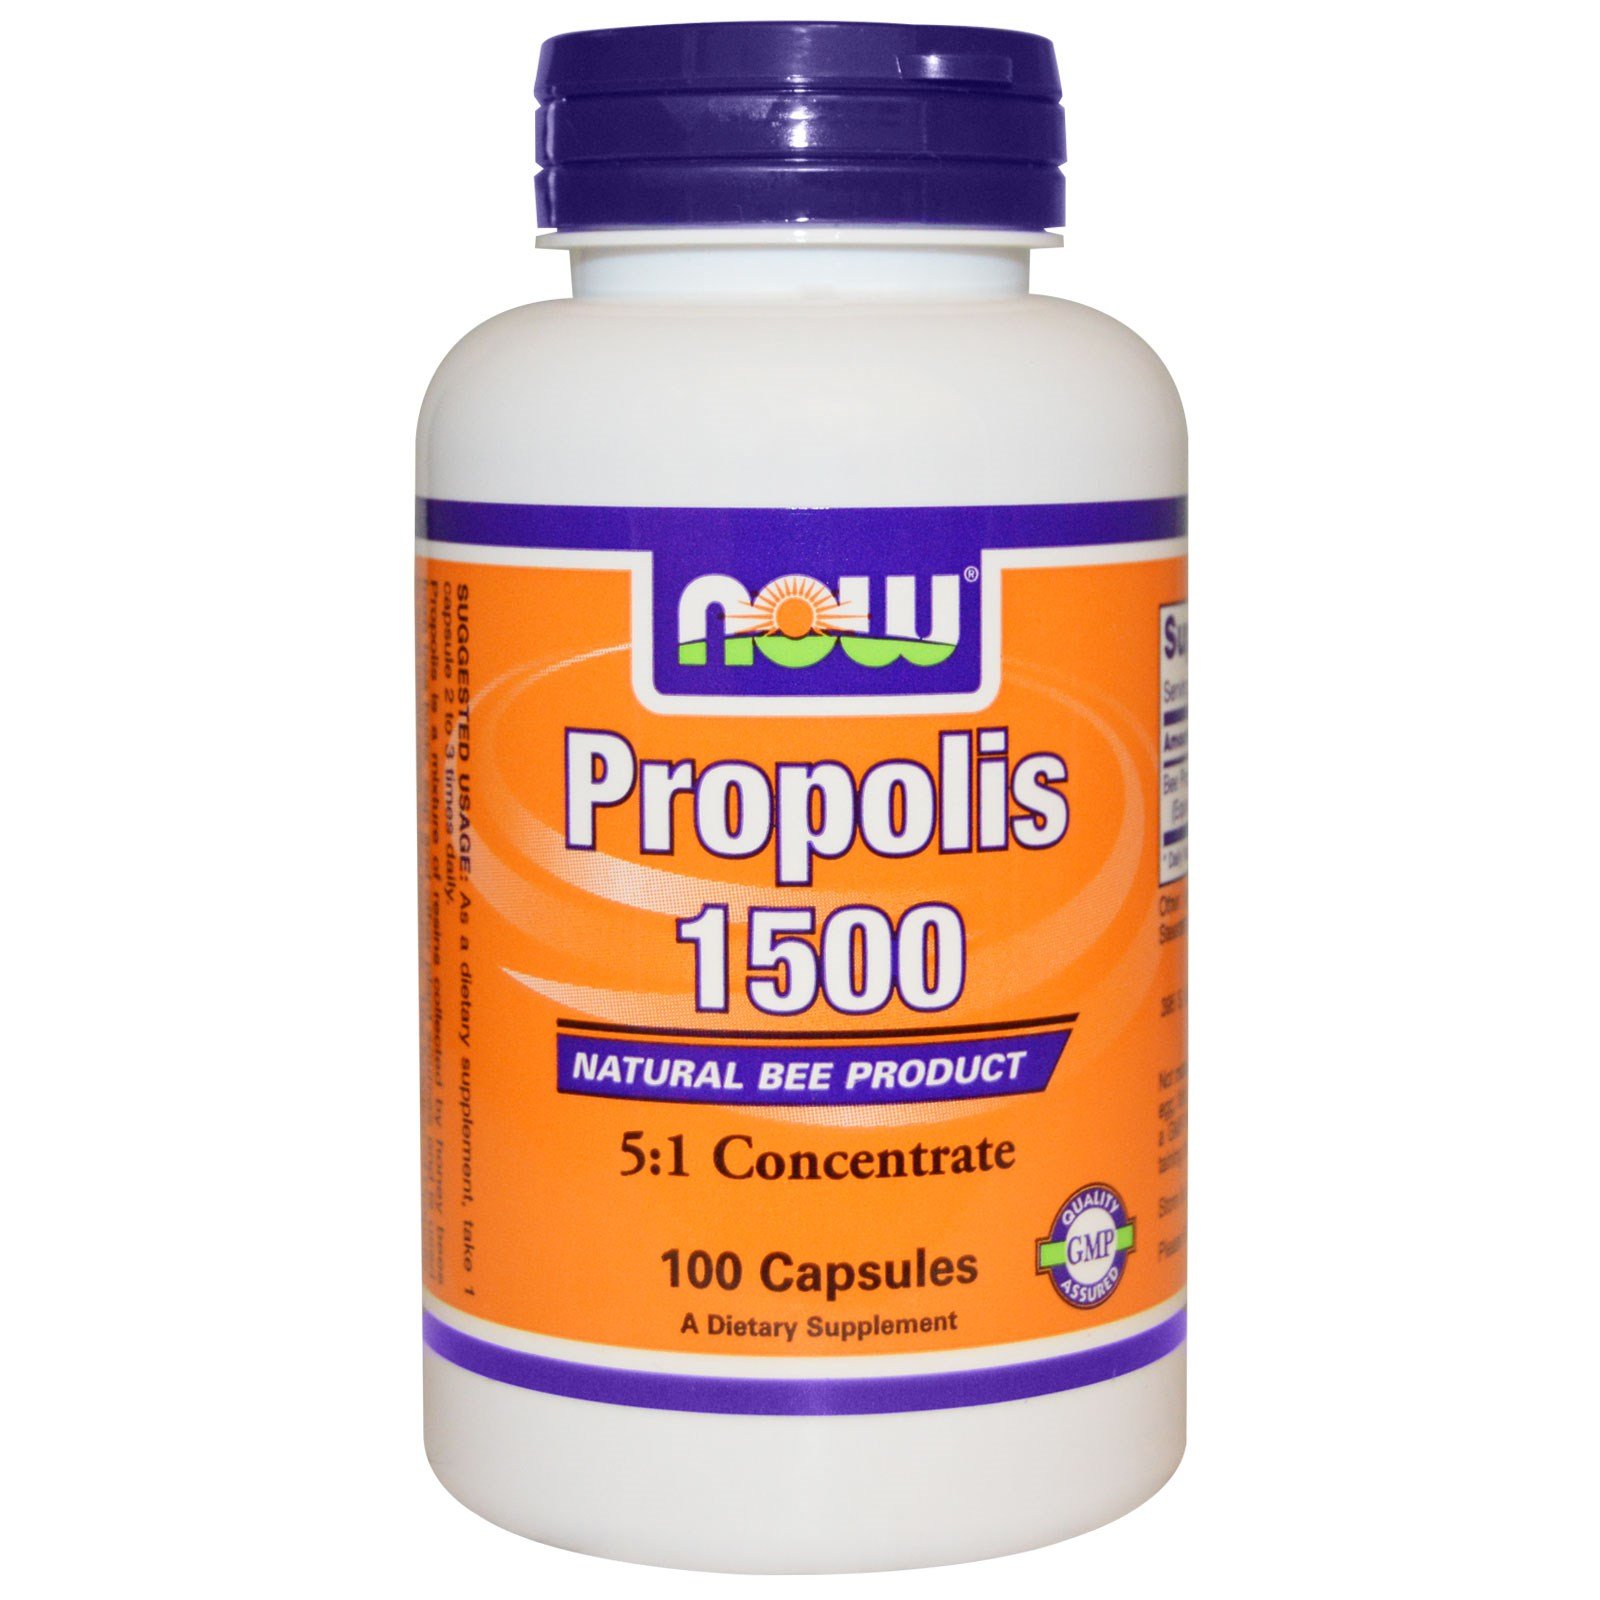 Propolis 1500, 100 pcs, Now. Special supplements. 